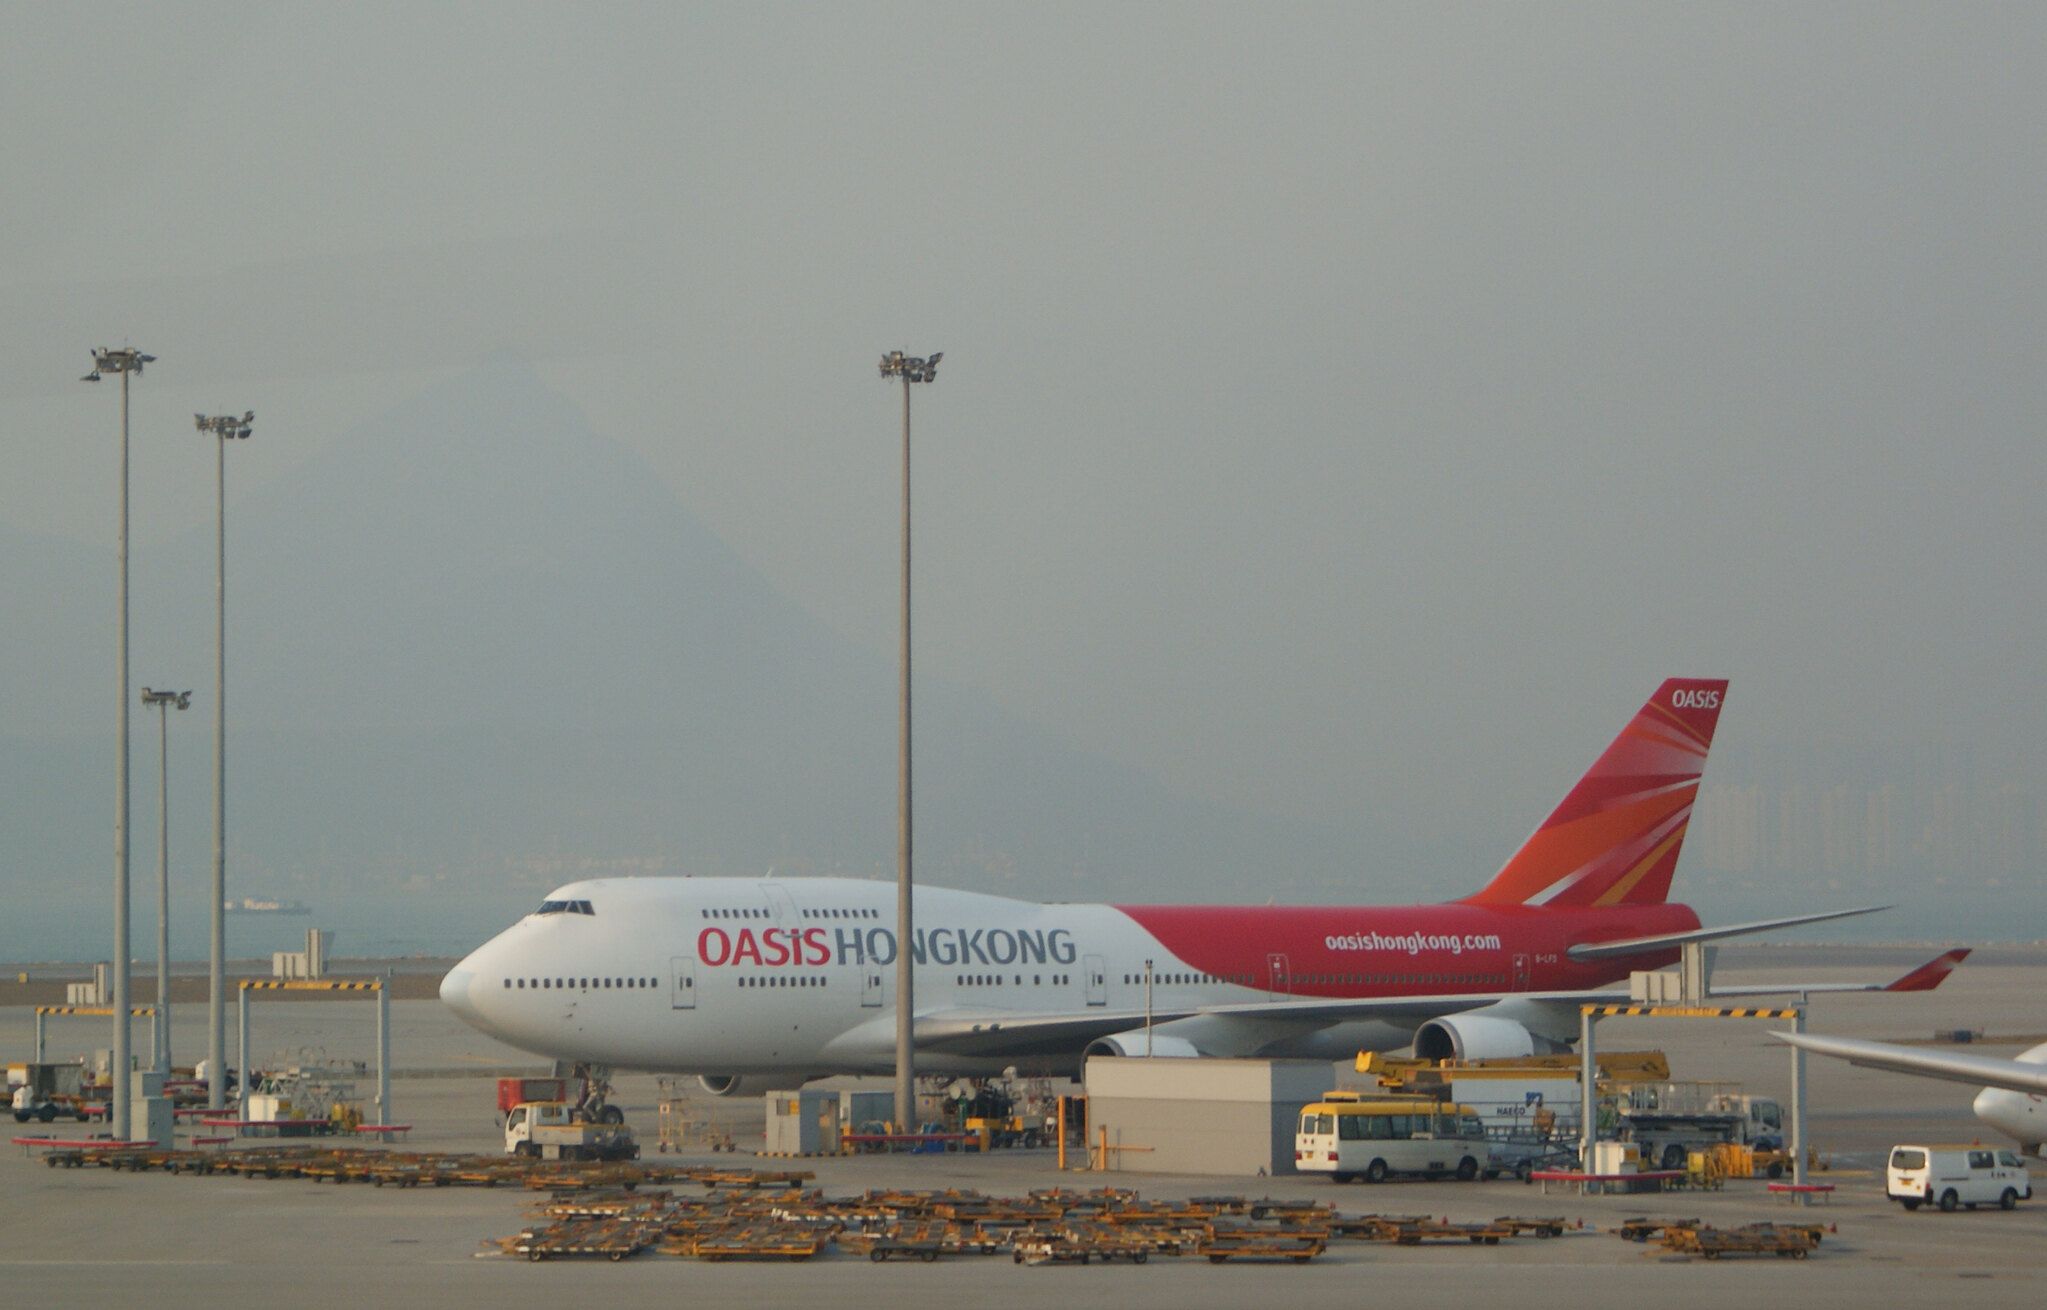 Mengapa Oasis Hong Kong Airlines Tidak Berkelanjutan Dalam Jangka Panjang